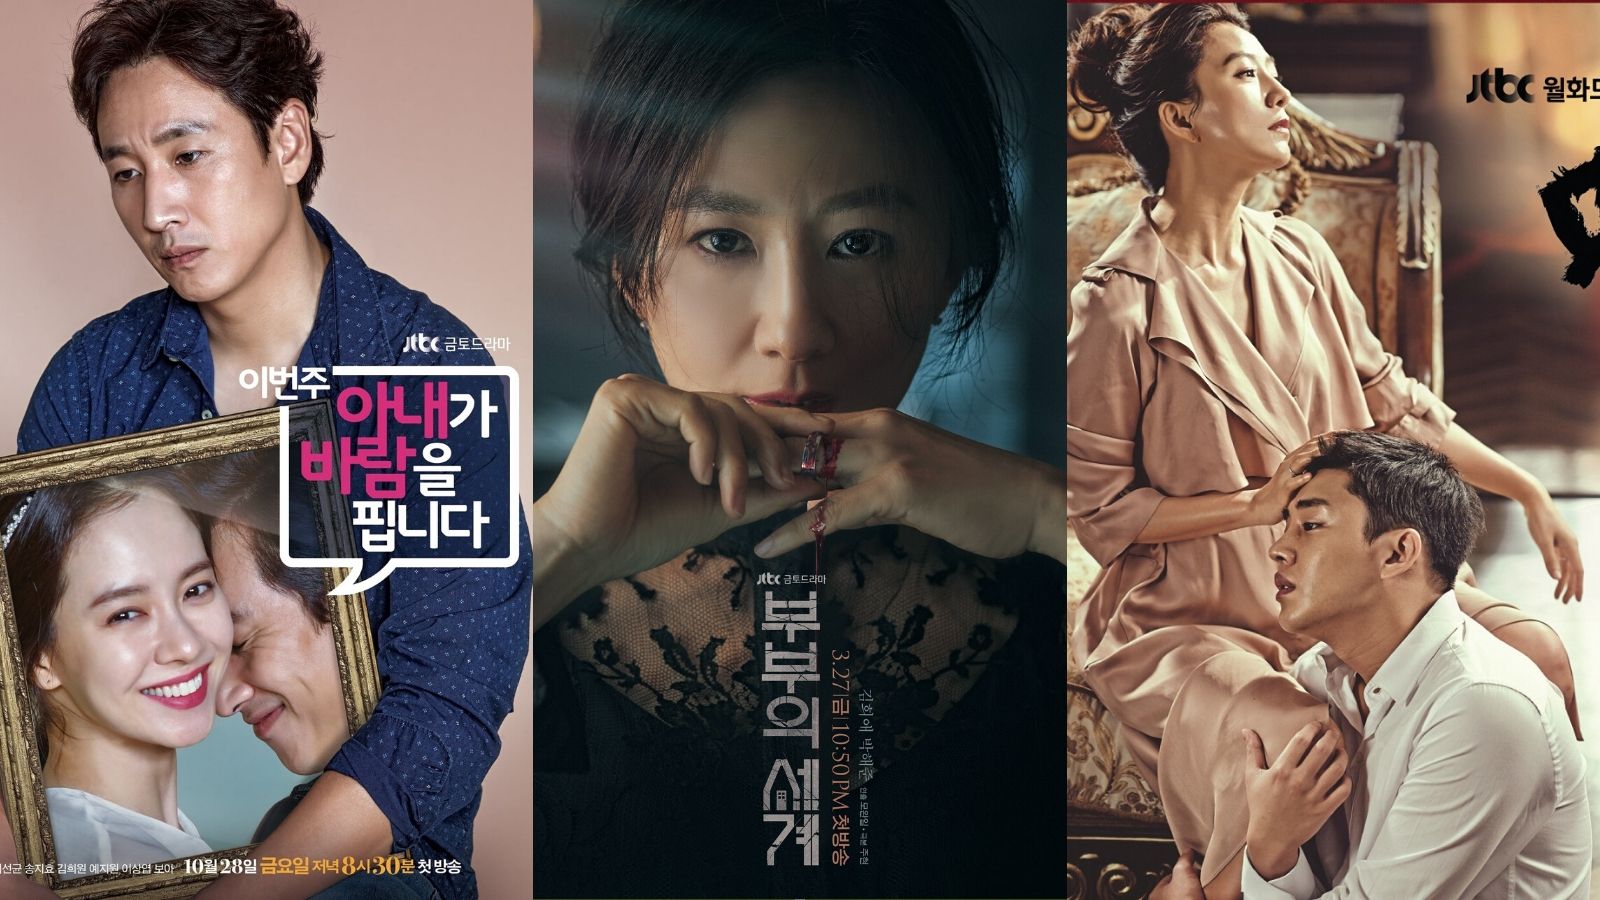 9 phim ngoại tình Hàn Quốc nói về thế giới hôn nhân | ELLE